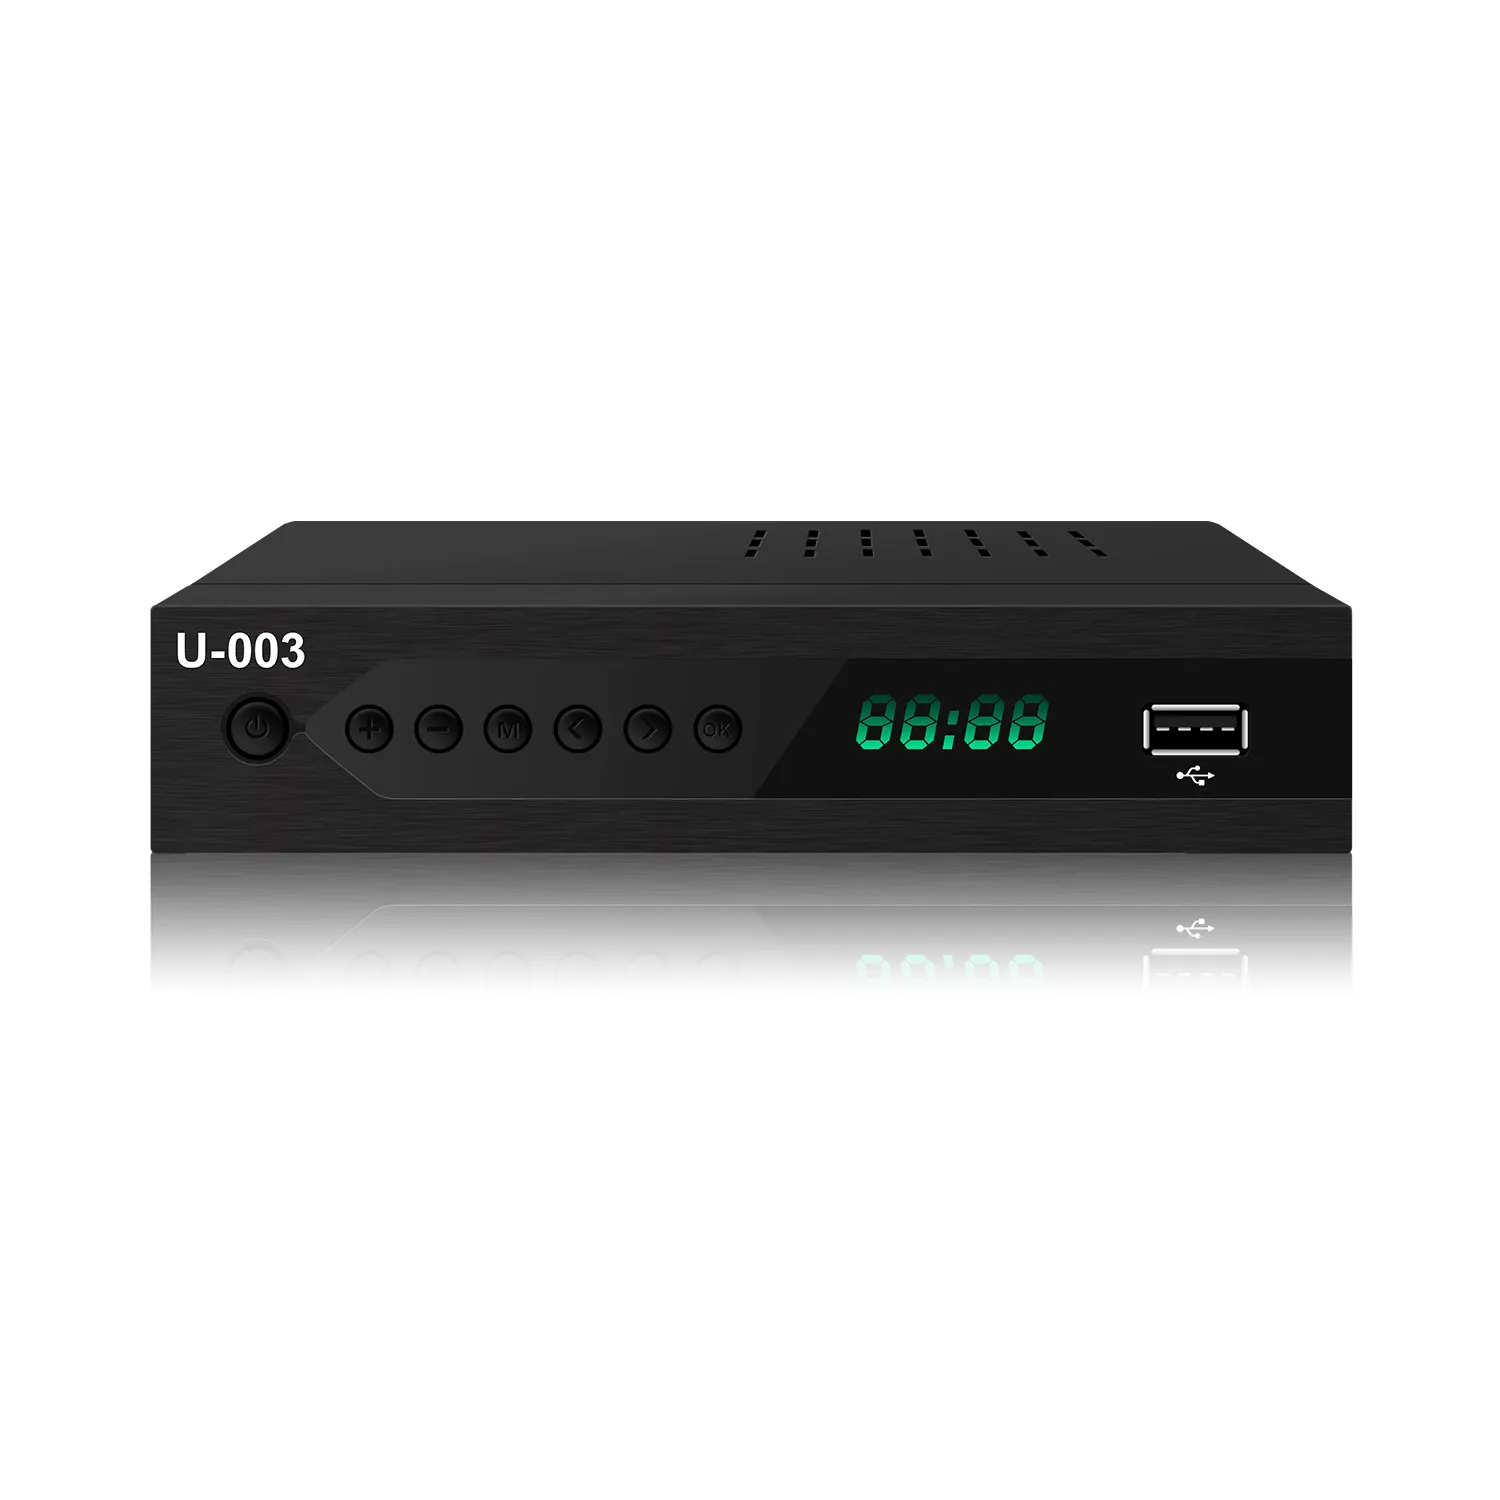 ATSC Tuner Set Top Box ATSC 1,0 Convert Box Free to Air H.264 decodificador PVR HD receptor de TV digital Set-Top Box